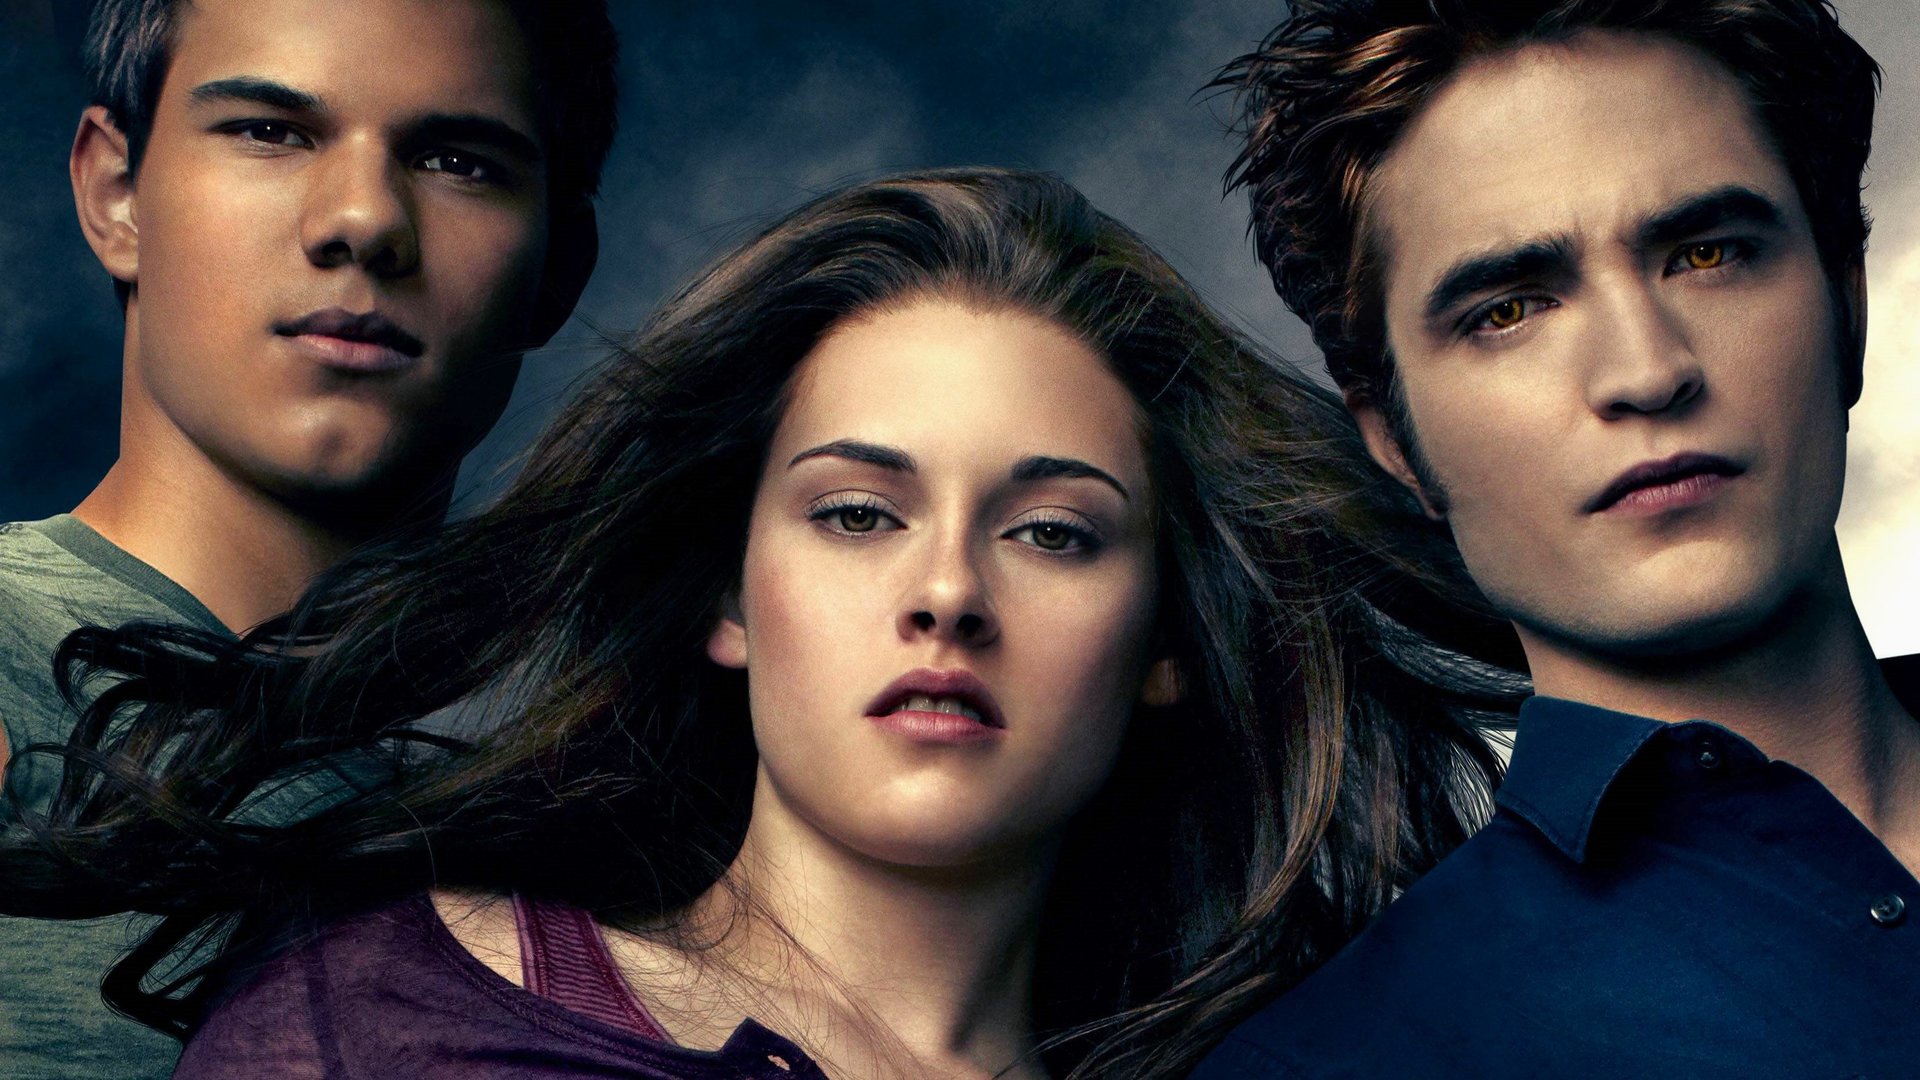 #„Twilight“ wird als Serie neu aufgelegt – allerdings nicht so, wie man denken würde